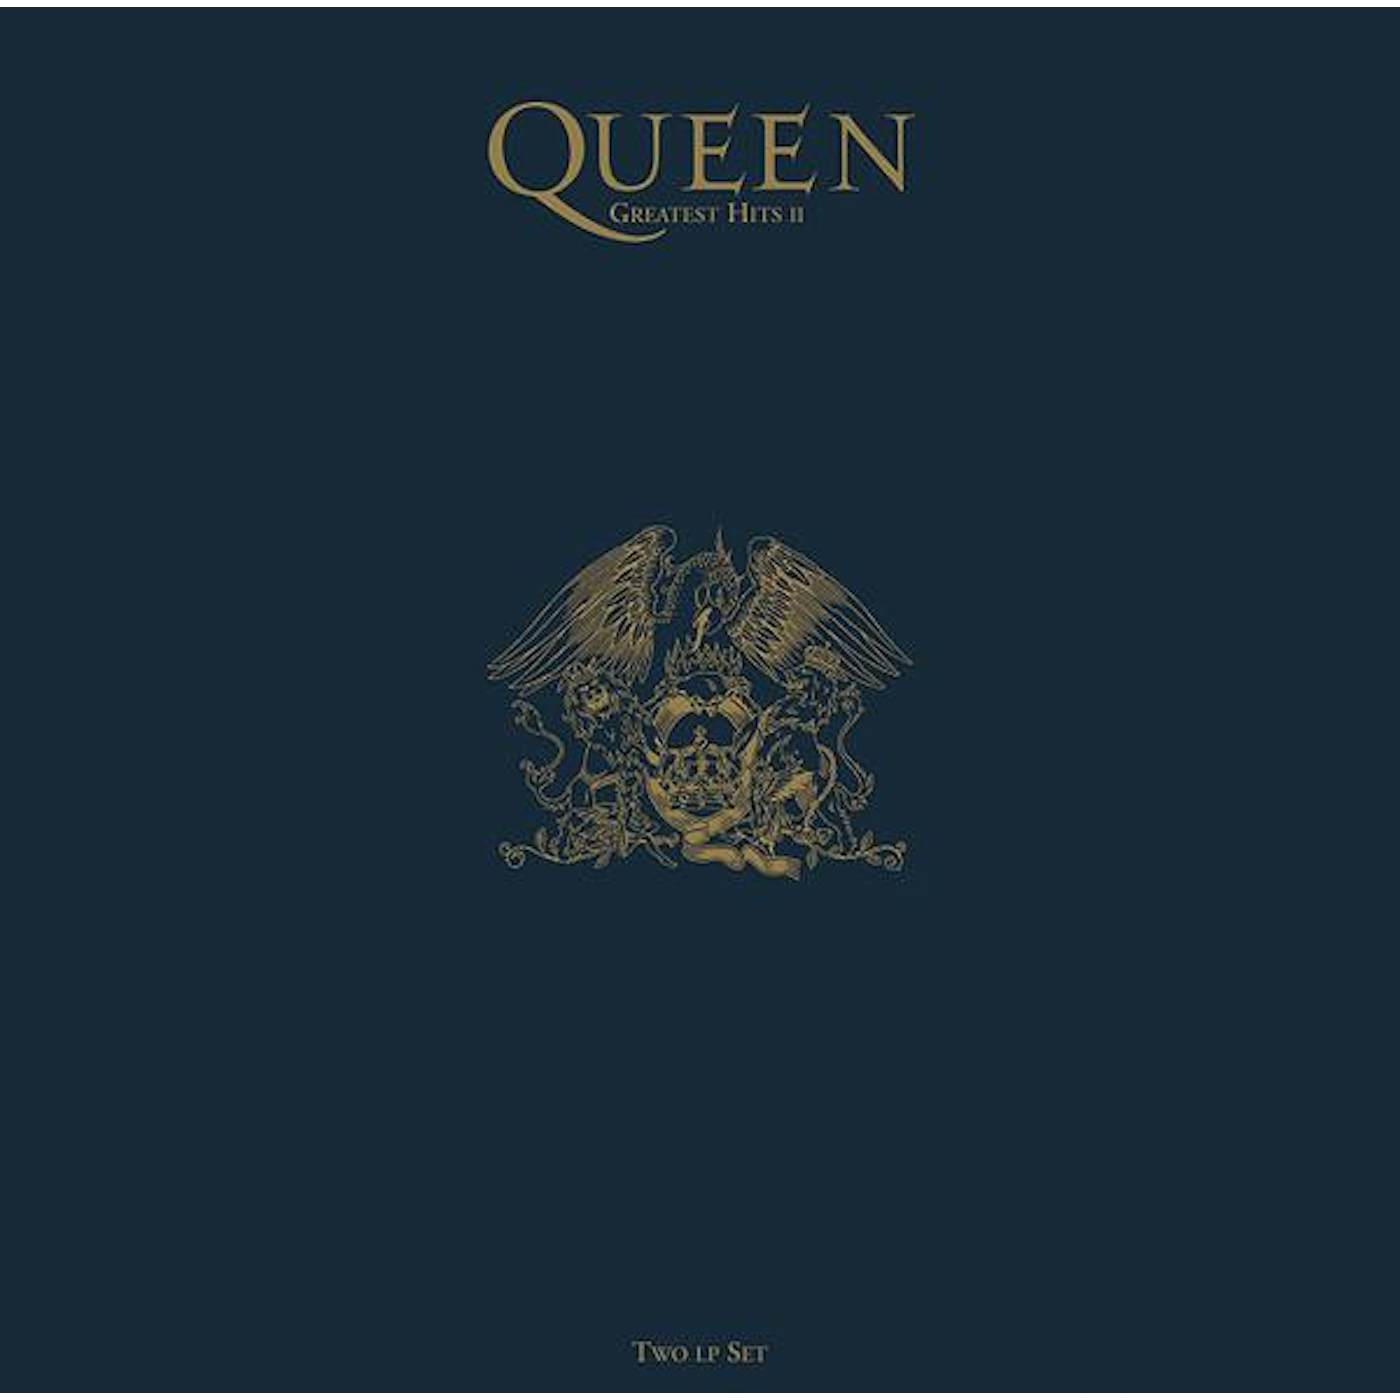 Queen GREATEST HITS II Vinyl Record